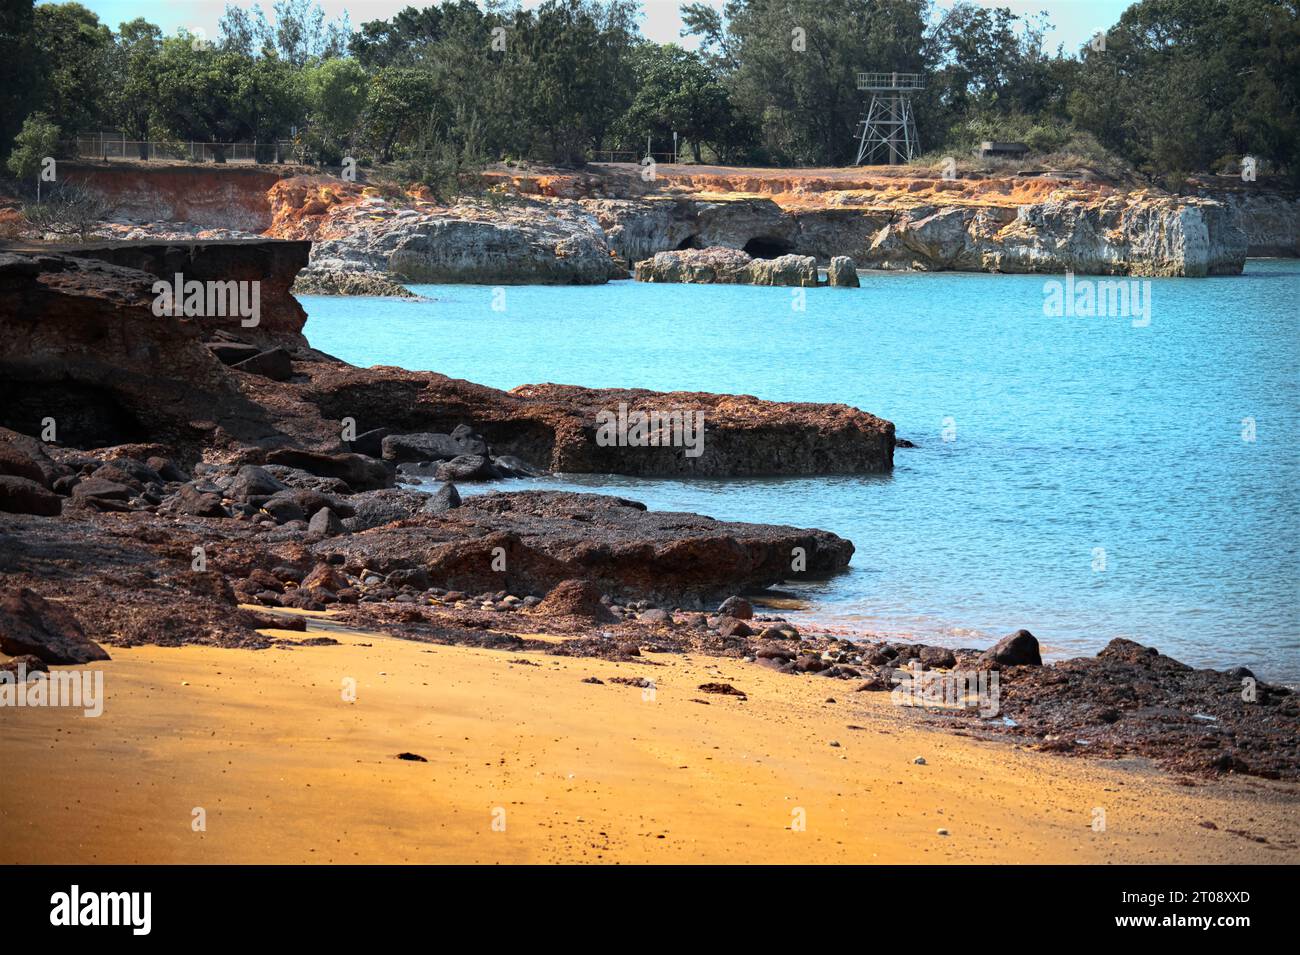 Les riches tons terreux et les textures des formations terrestres dentelées dans une magnifique baie du nord de l'Australie. Banque D'Images